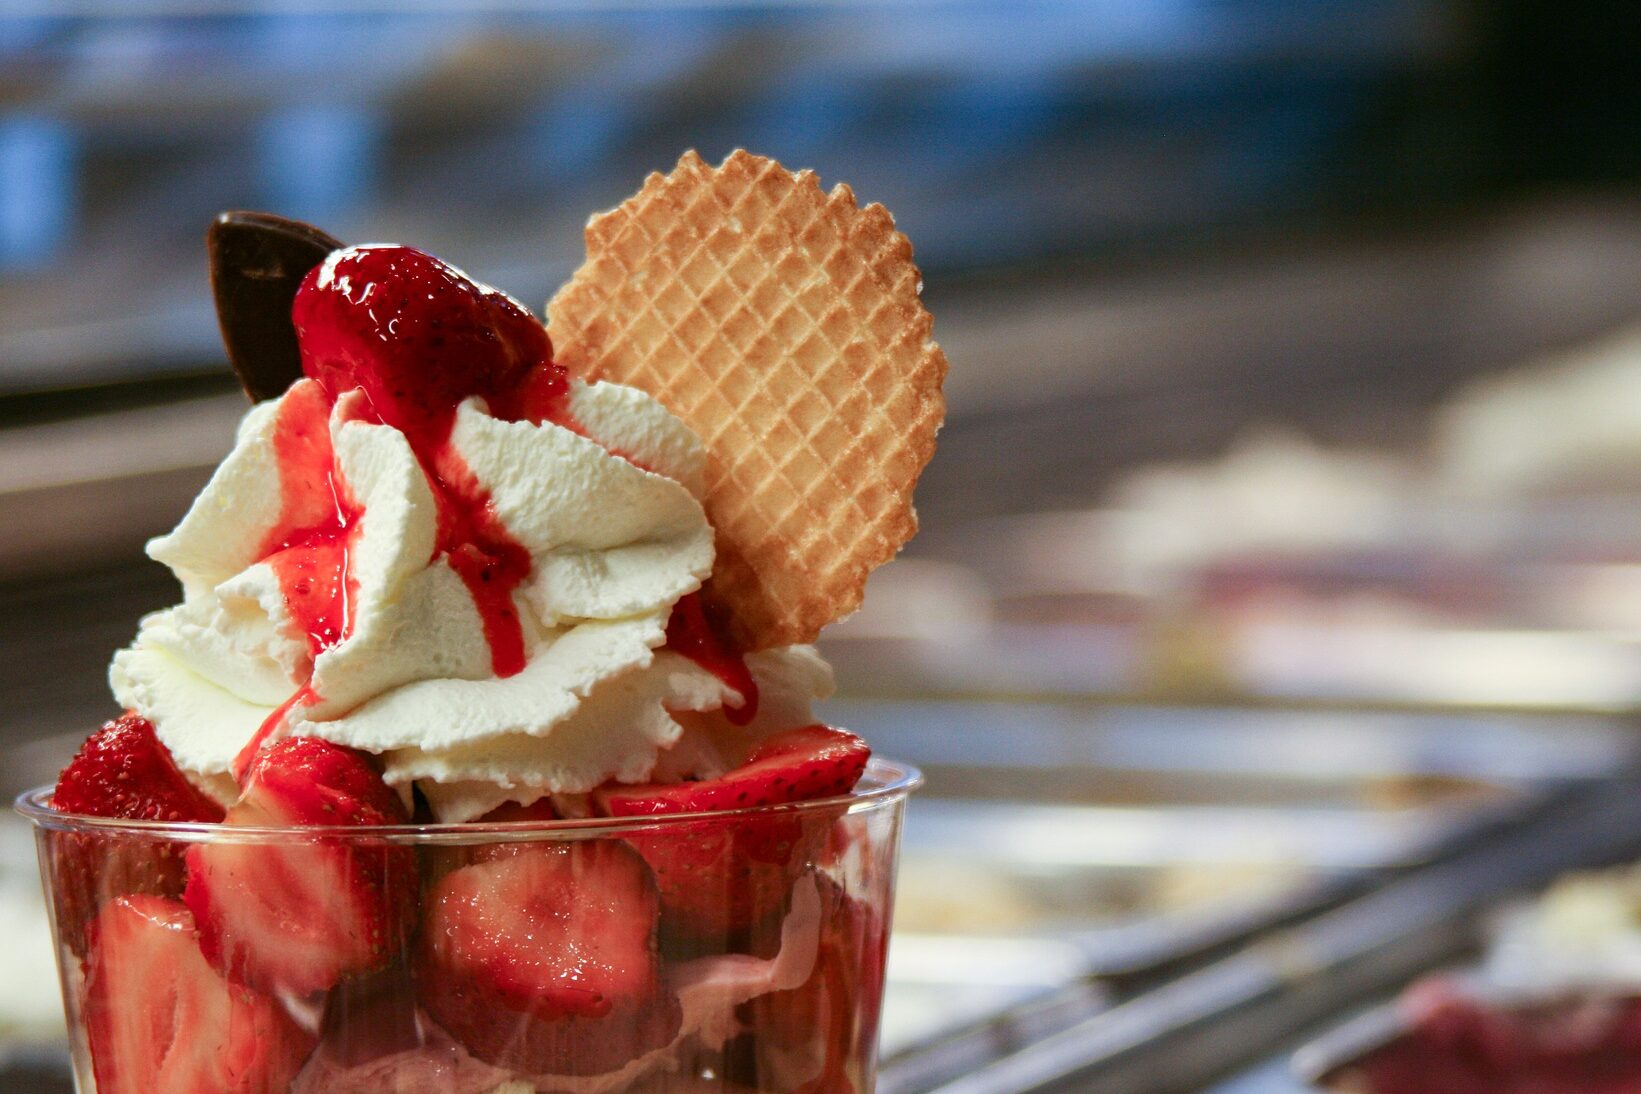 Vemos uma taça com frutas e chantilly; ao fundo, desfocado, é possível ver um balcão de sorveteria (imagem ilustrativa). Texto: franquia cream berry.